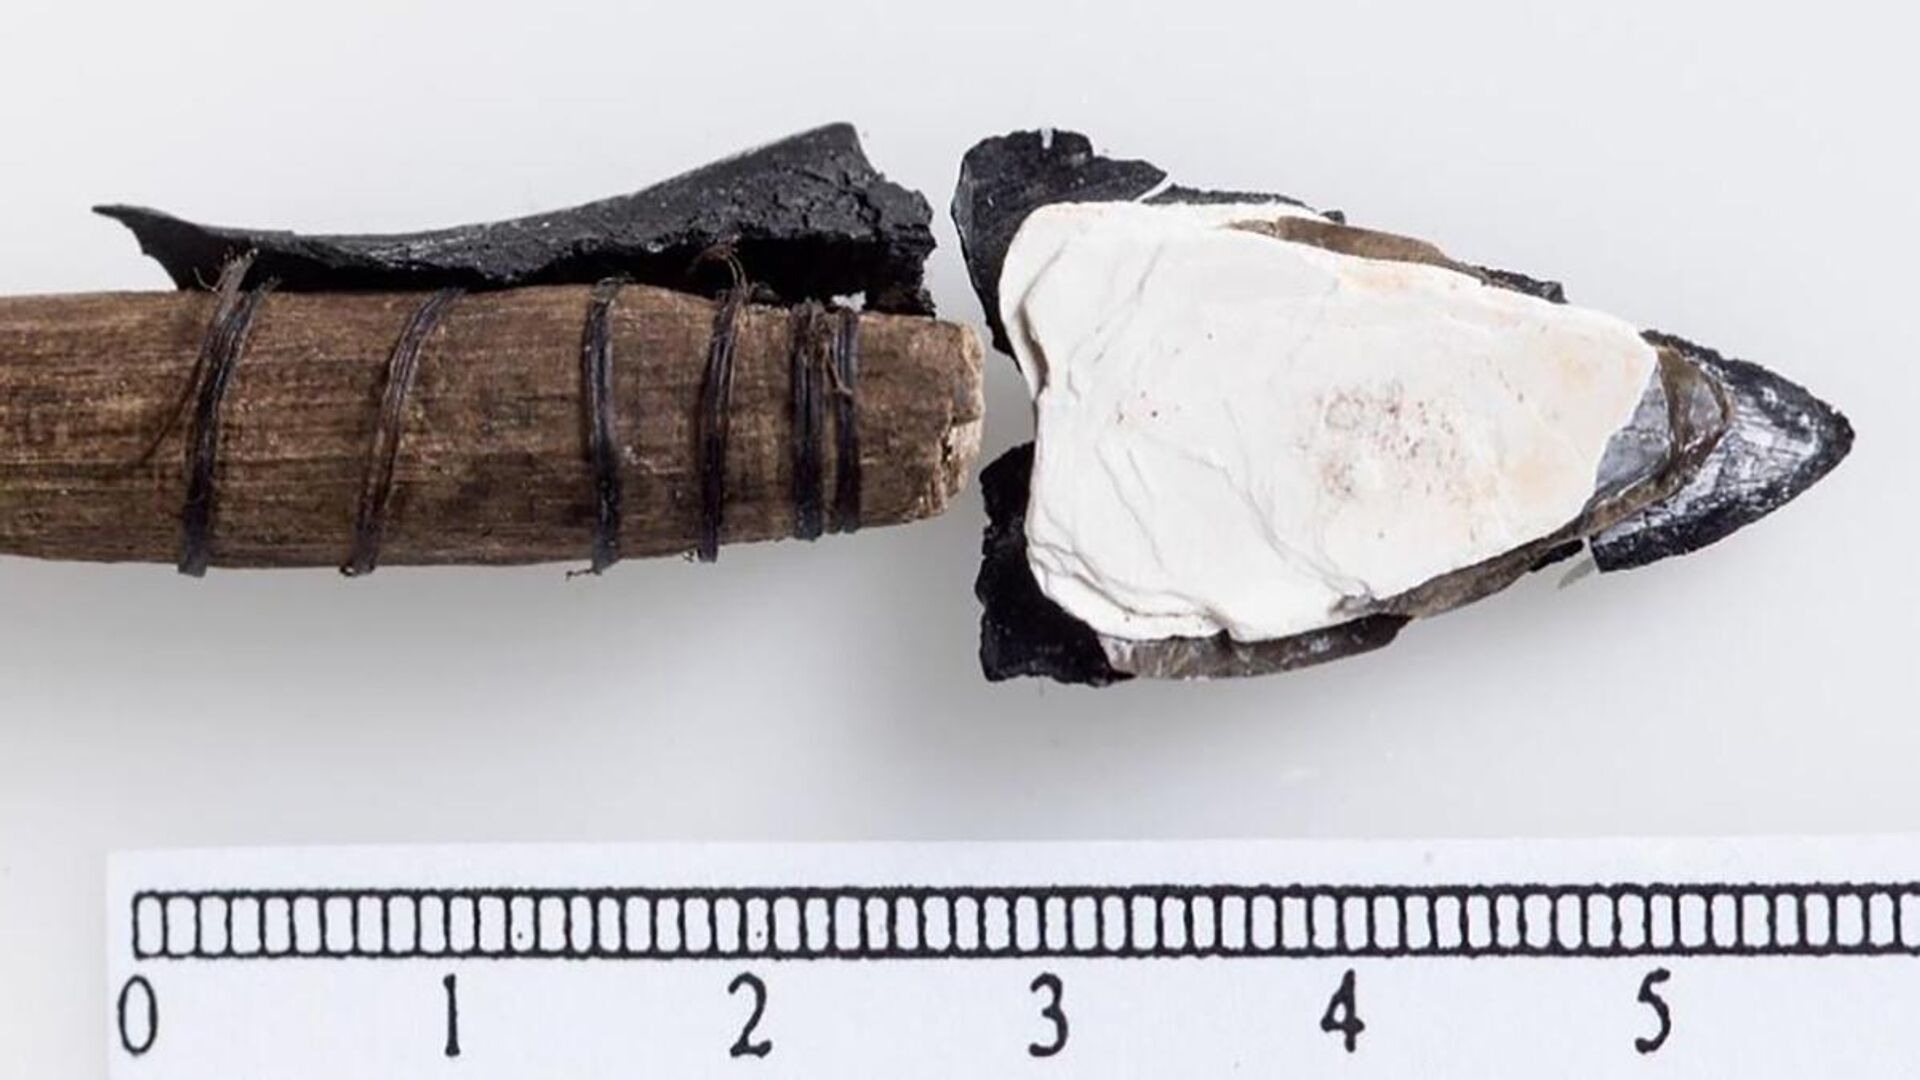 Em Jotunheimen também foram desenterrados os restos de uma flecha de 6.100 anos, sendo o artefato mais antigo já encontrado no gelo norueguês, indicando que a área foi utilizada por pessoas durante muitos milênios - Sputnik Brasil, 1920, 07.06.2022